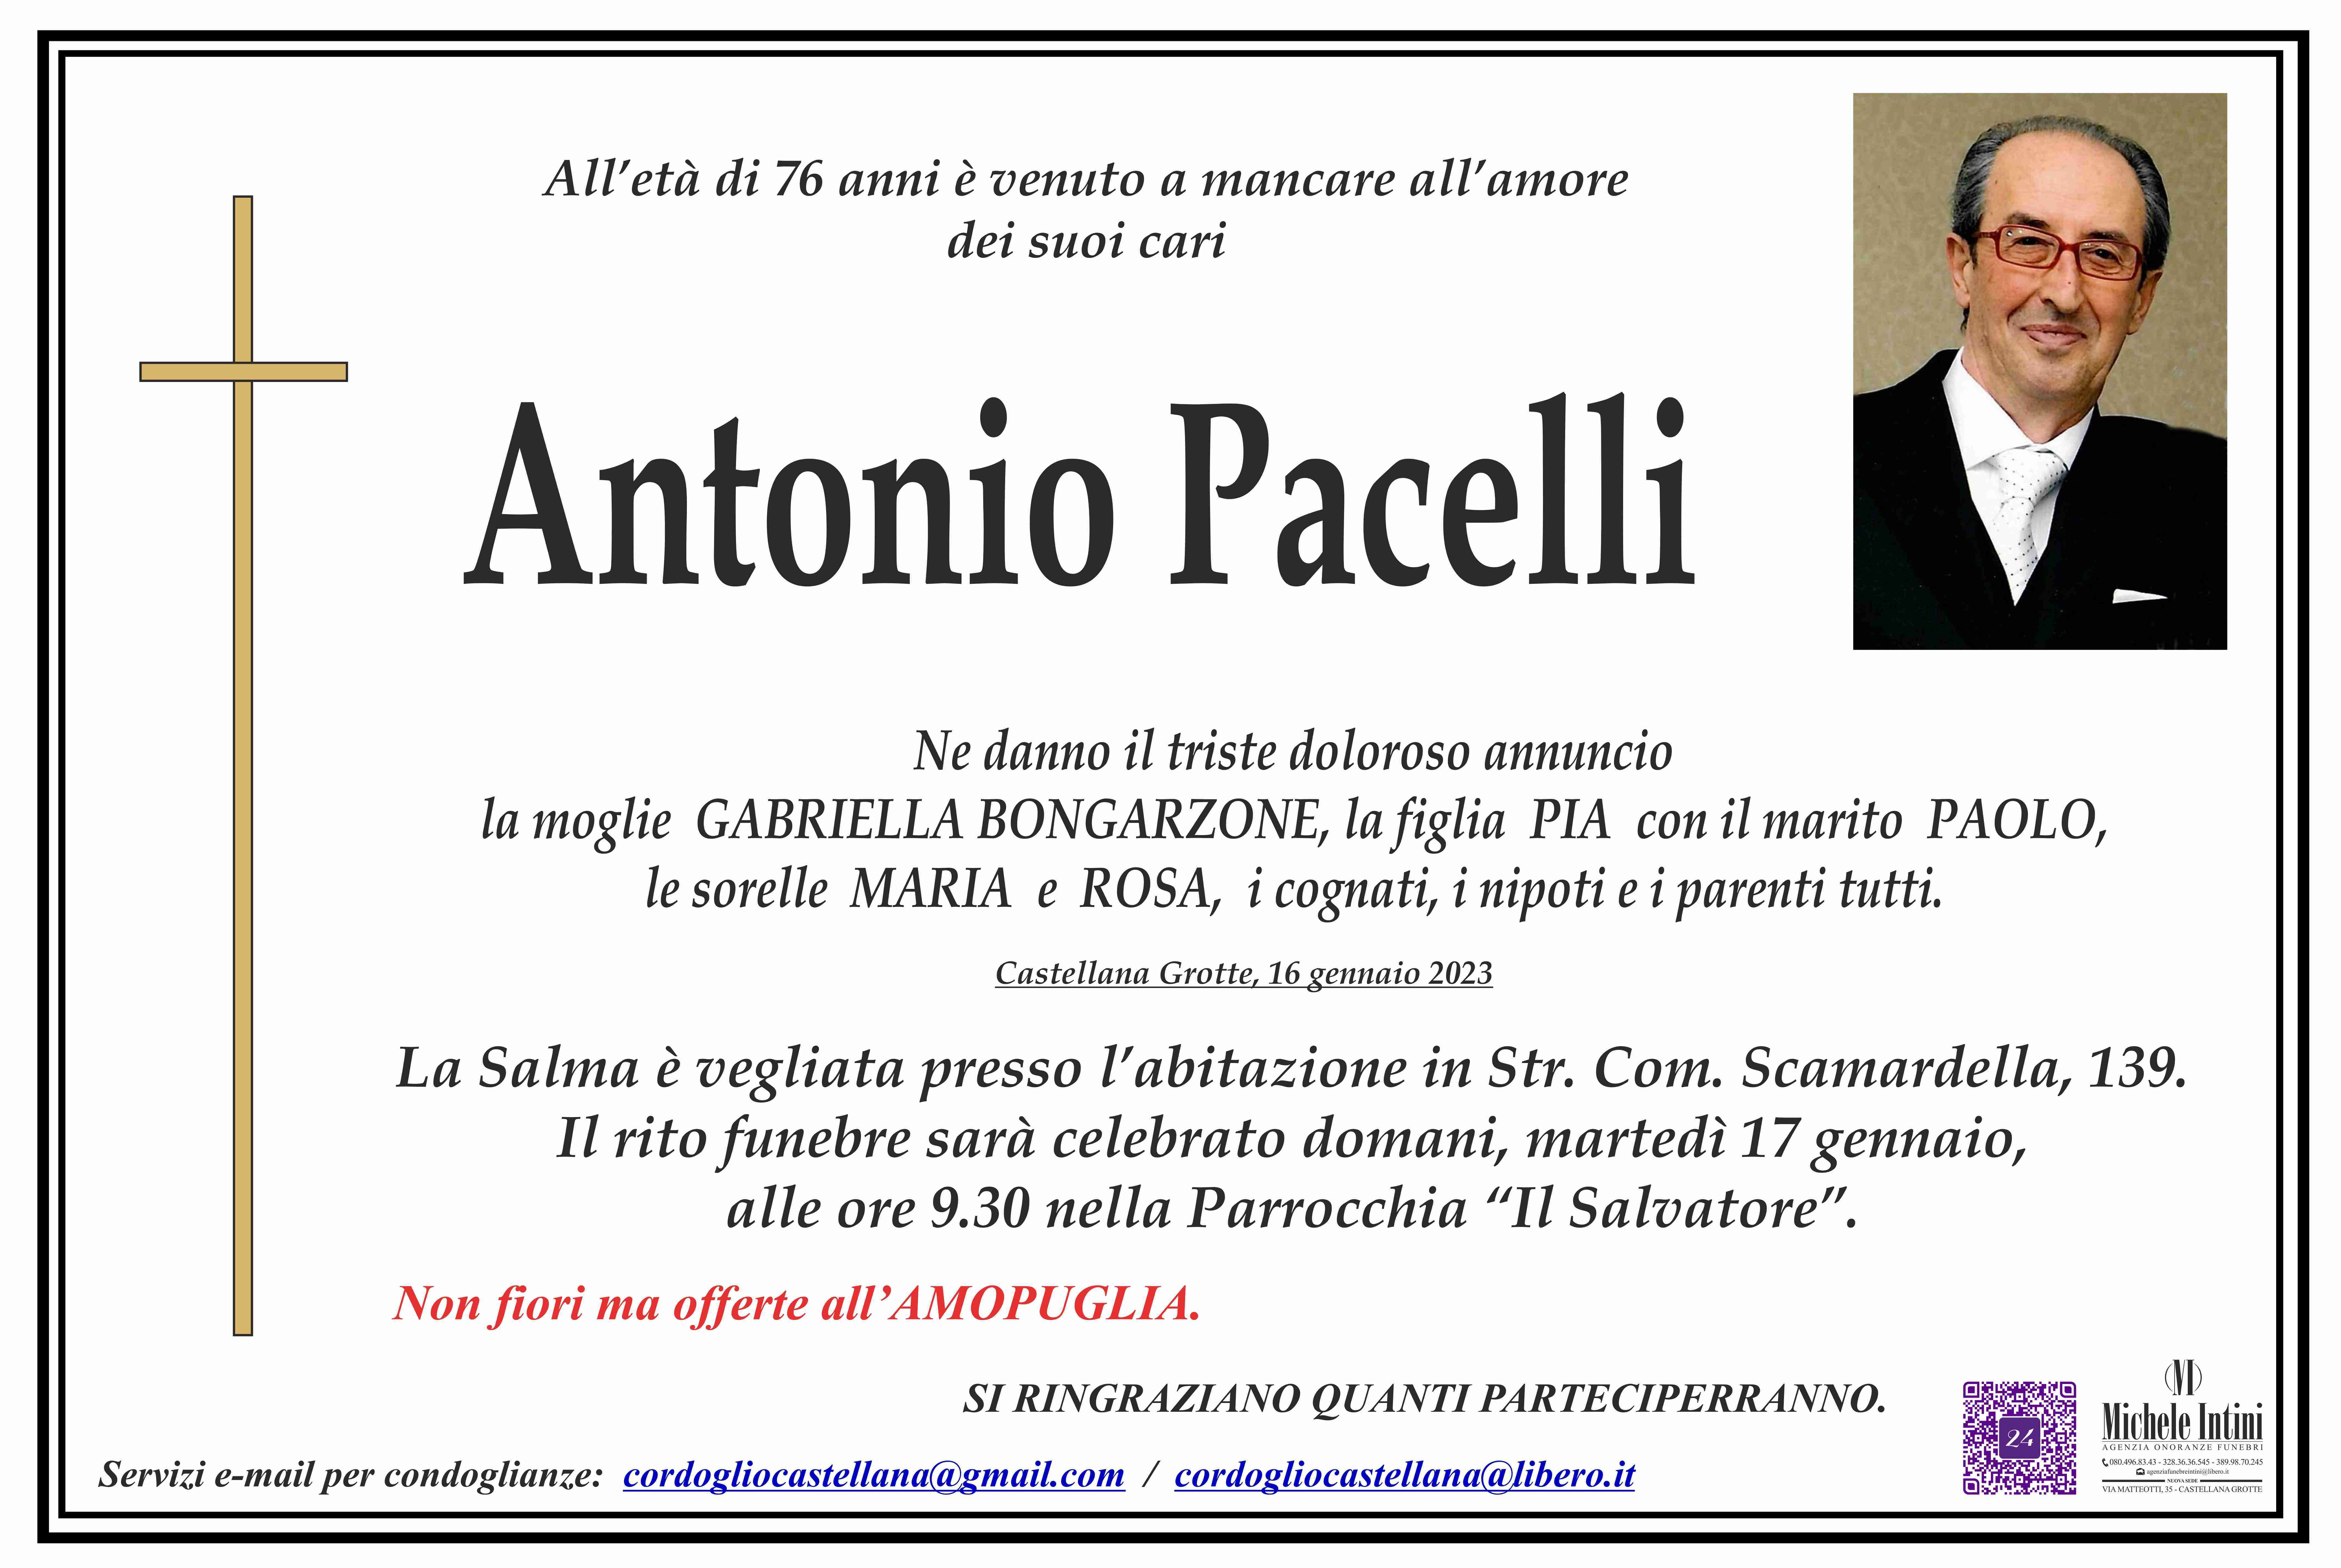 Antonio Pacelli